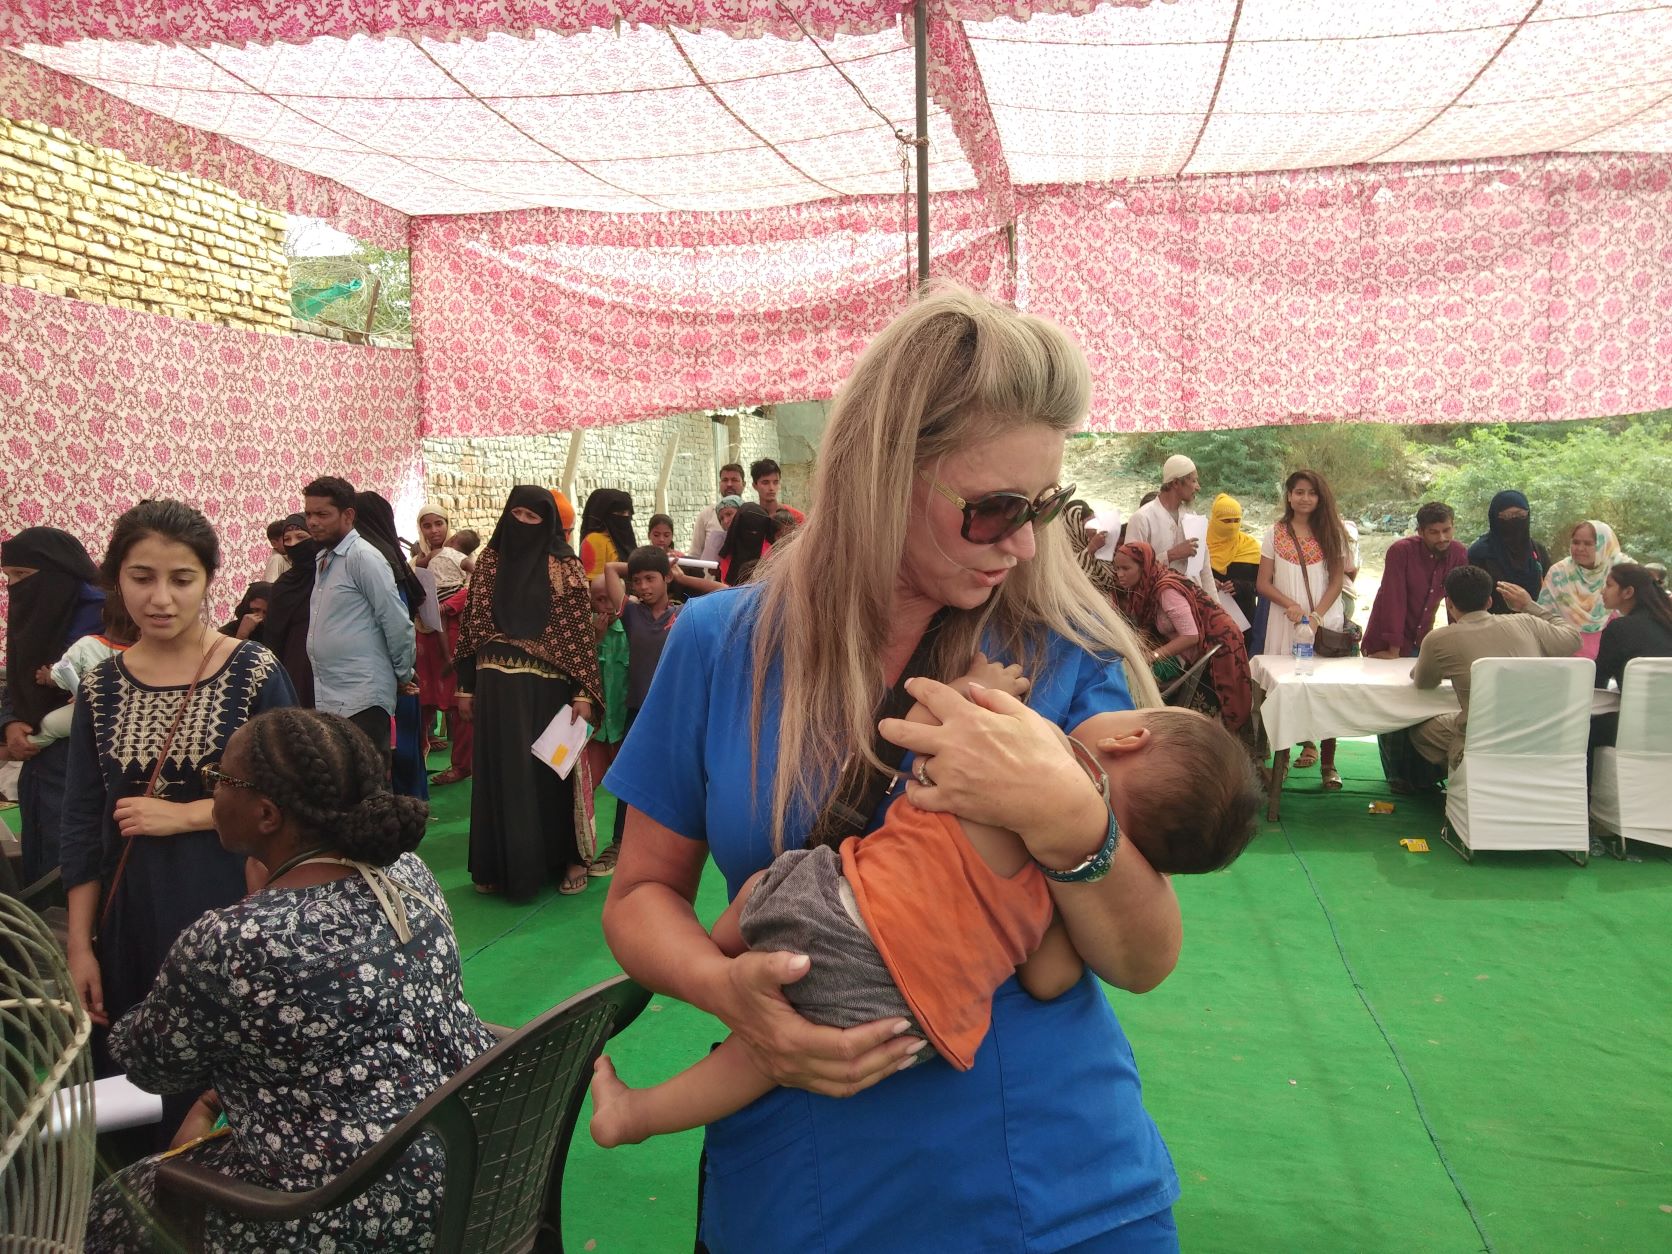 Donna voluntariat într-o excursie de misiune medicală în India (2019)